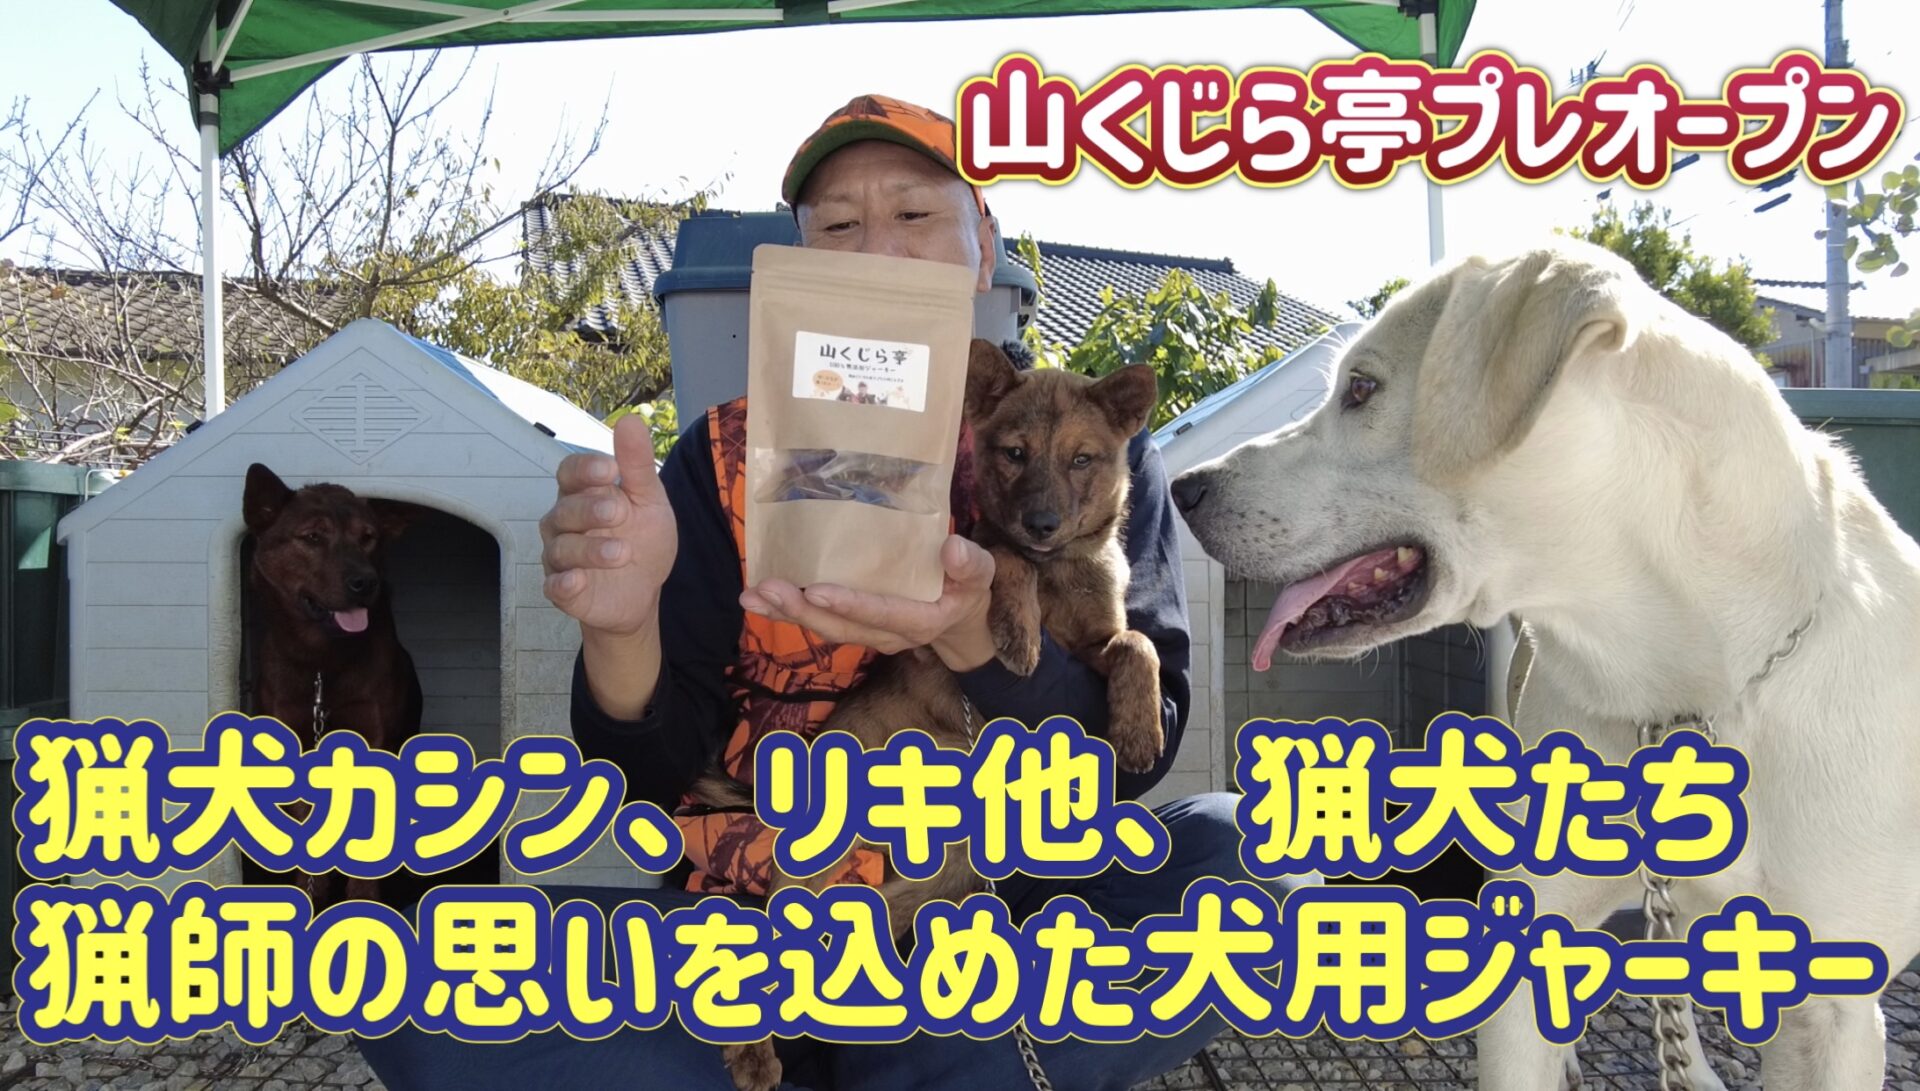 猟犬カシン、リキ他、猟犬たちや九州の猟師の思いを込めたイノシシ肉ジャーキー